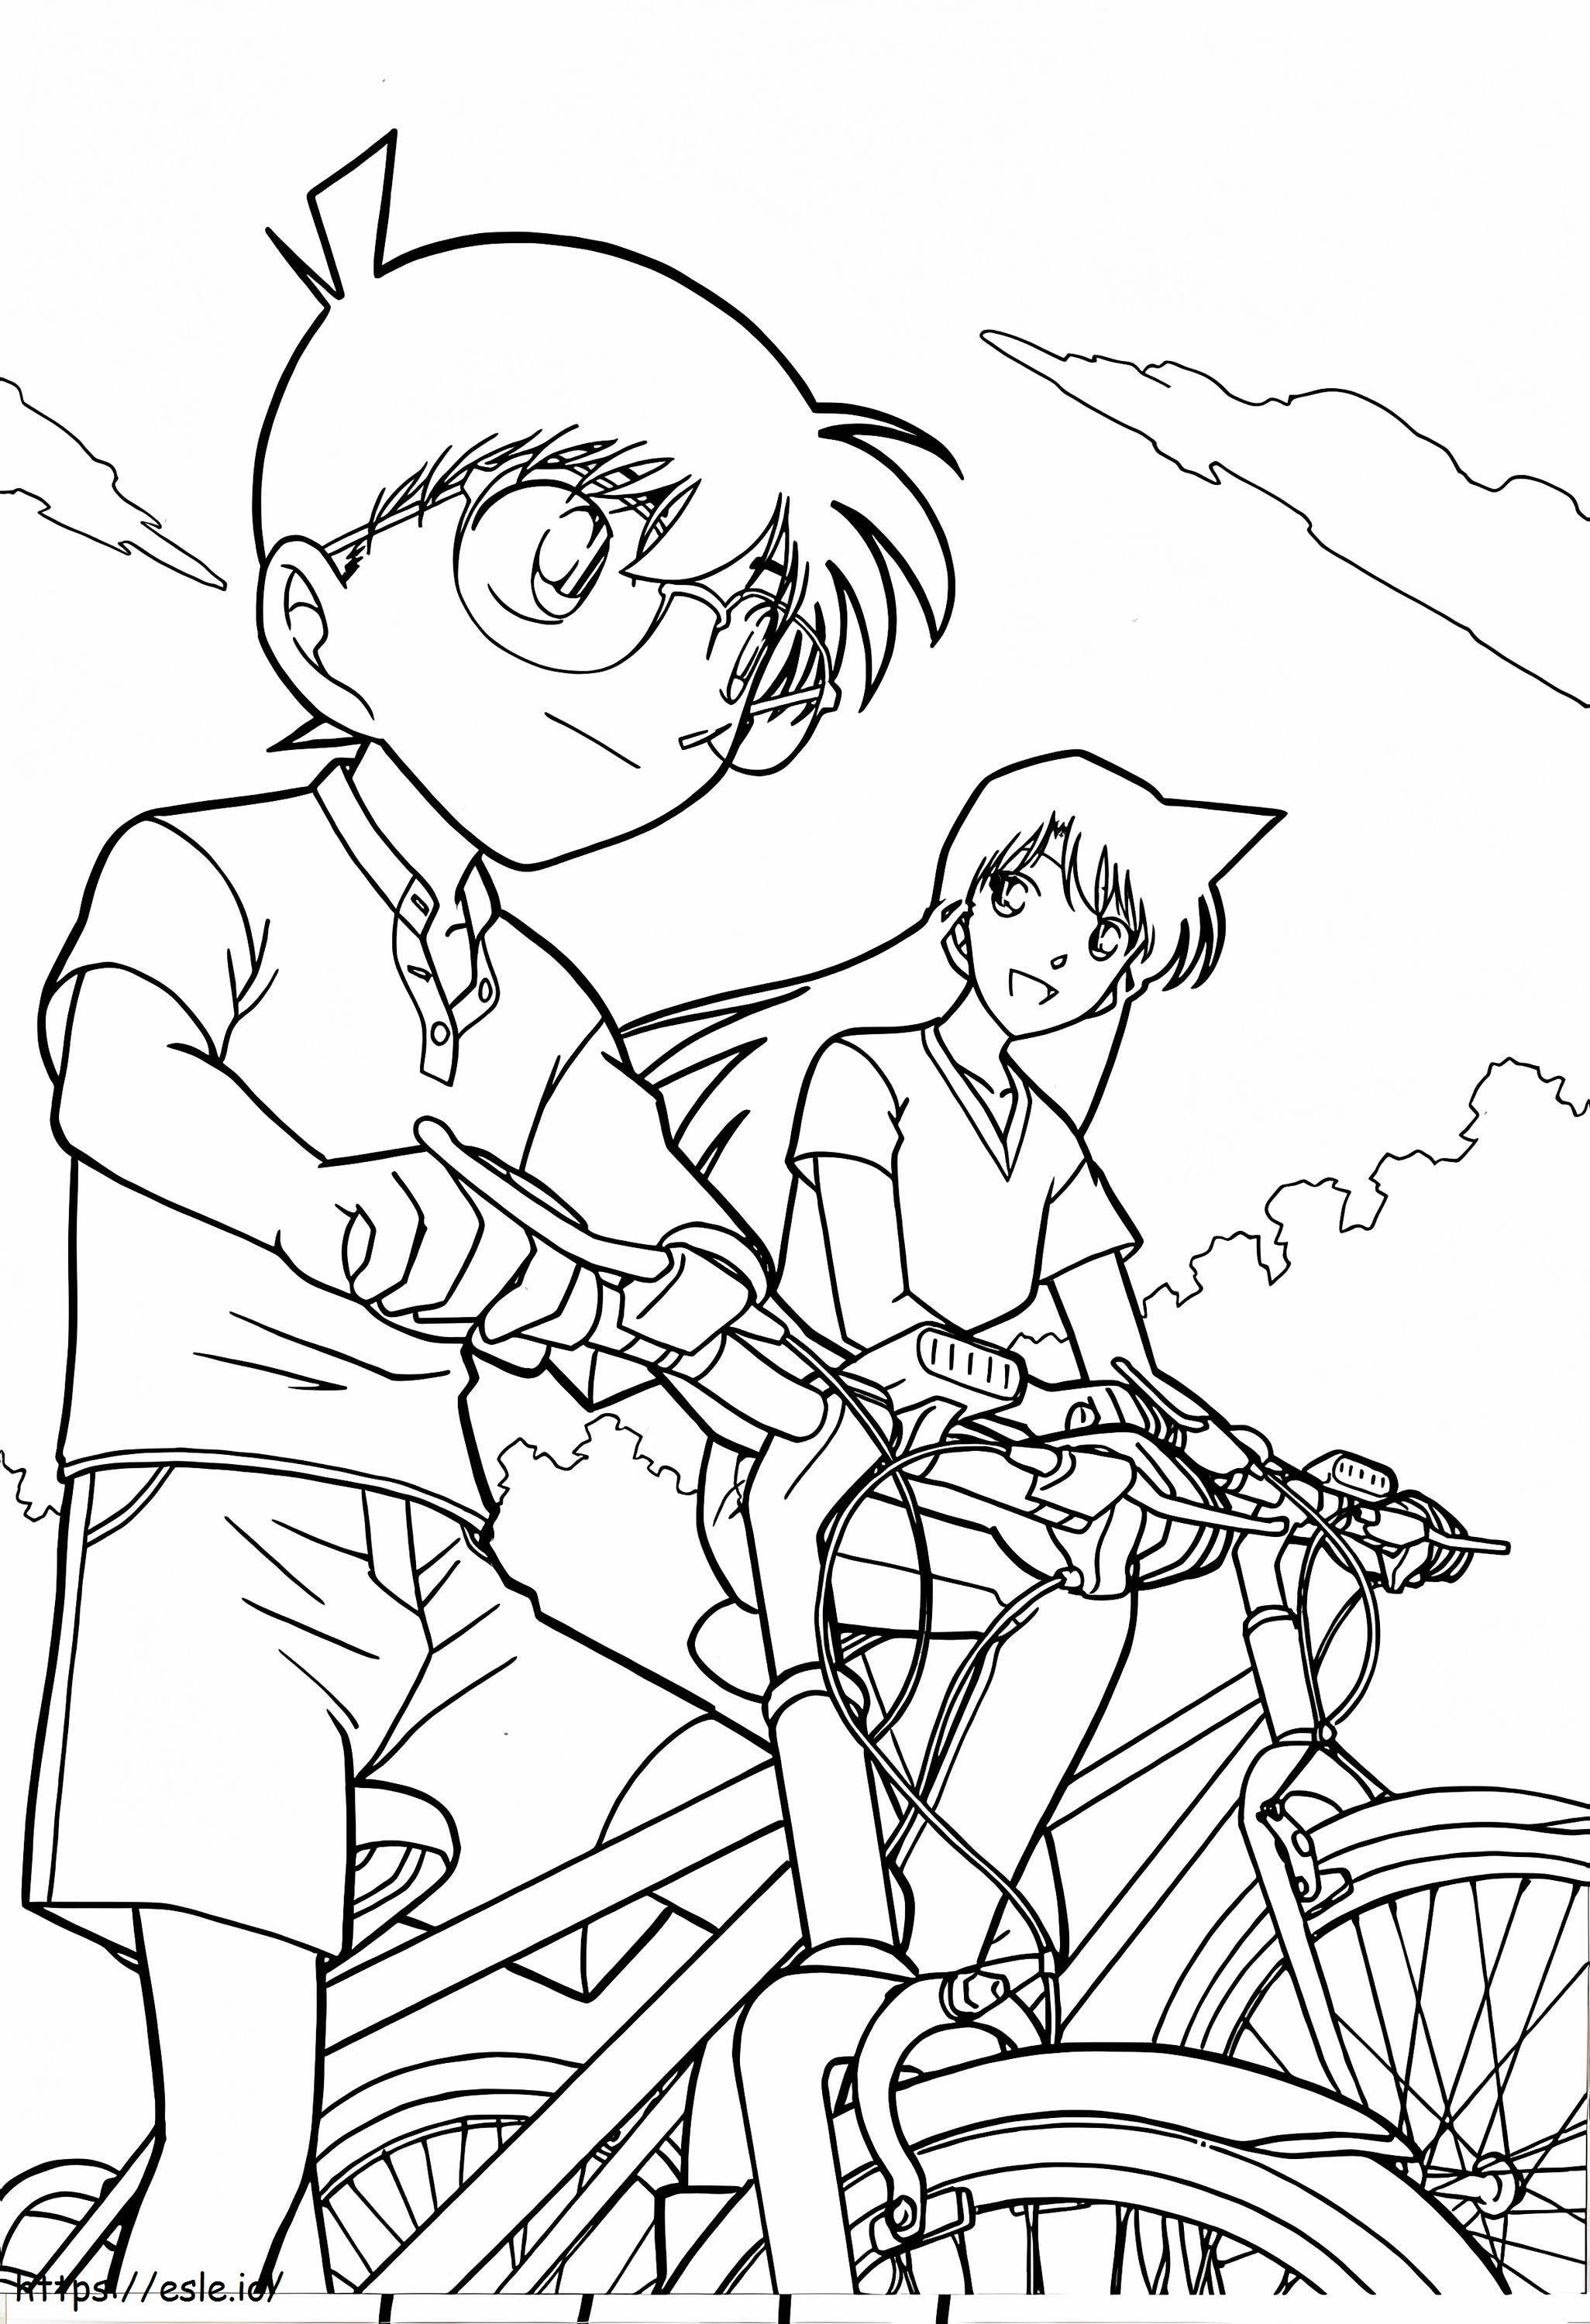 Conan și a alergat pe o bicicletă de colorat